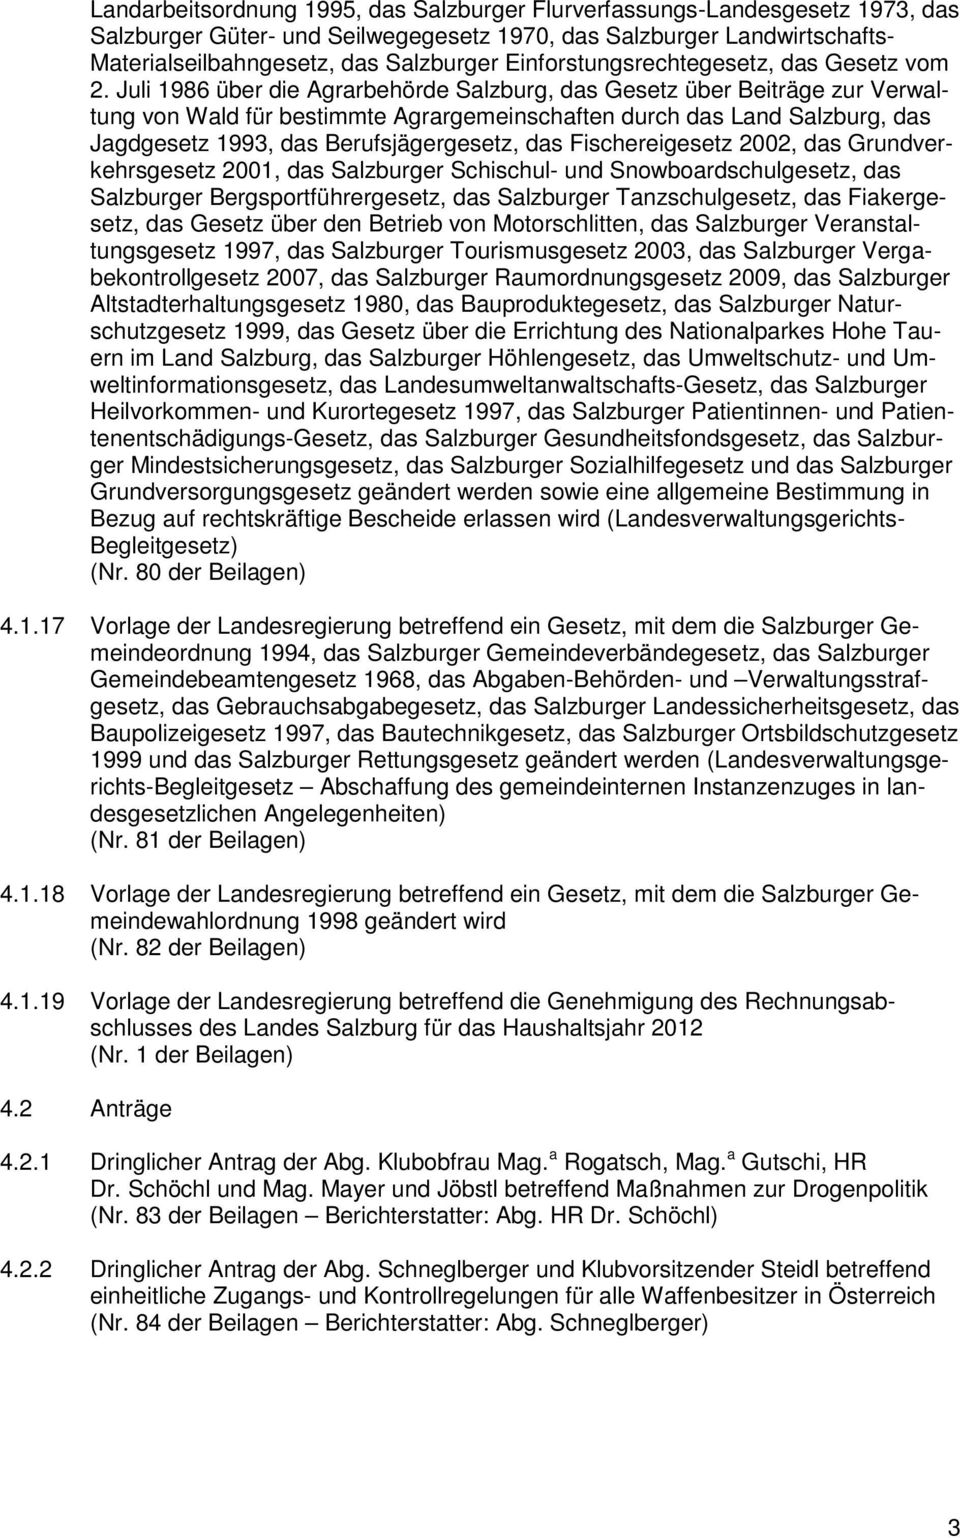 Juli 1986 über die Agrarbehörde Salzburg, das Gesetz über Beiträge zur Verwaltung von Wald für bestimmte Agrargemeinschaften durch das Land Salzburg, das Jagdgesetz 1993, das Berufsjägergesetz, das